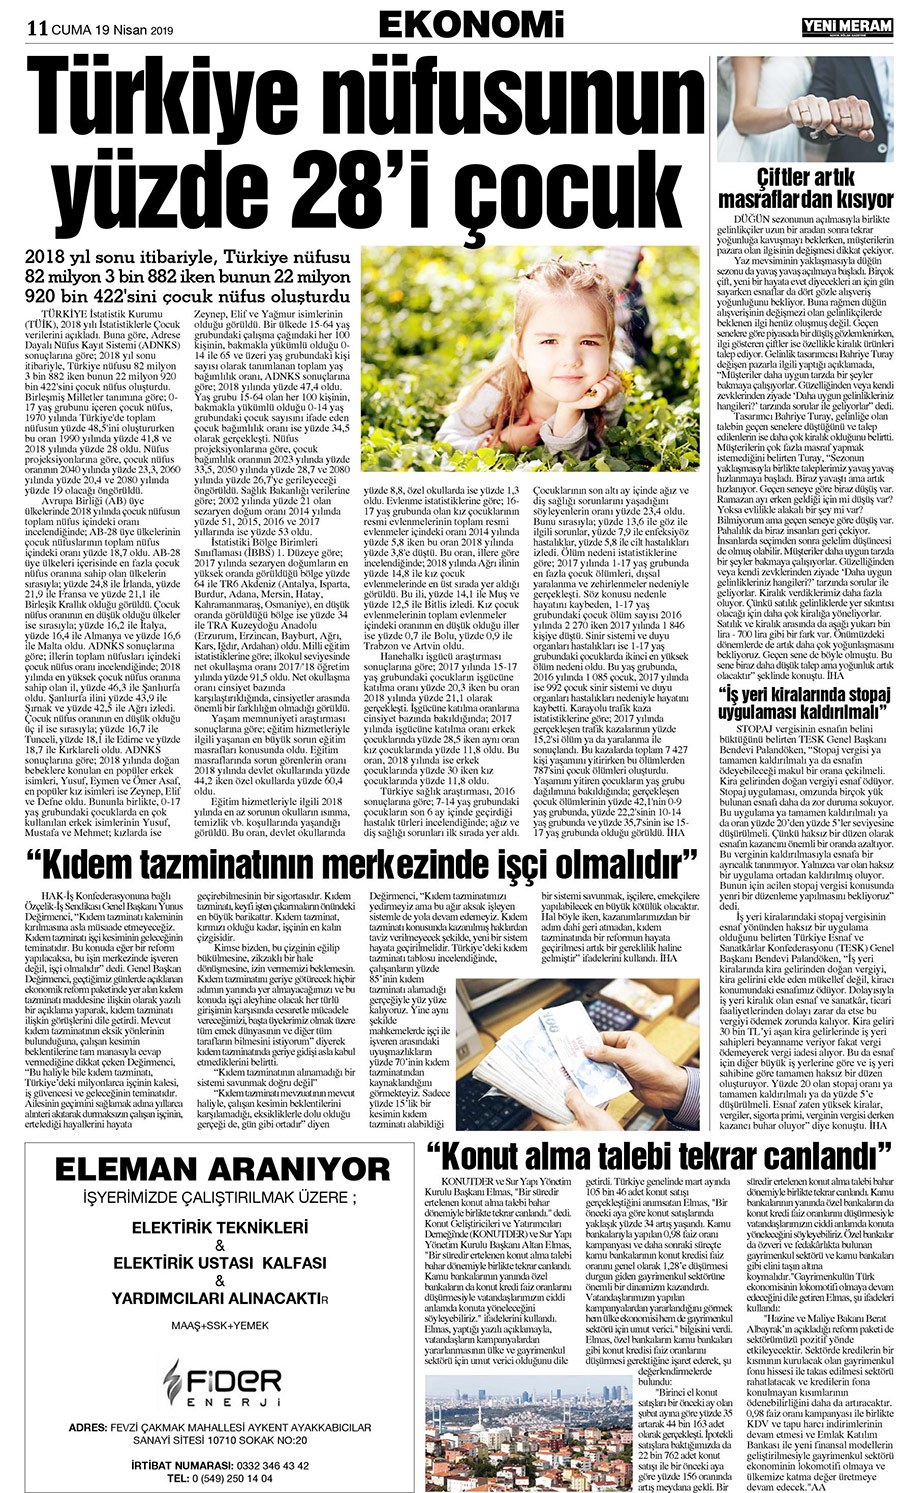 19 Nisan 2019 Yeni Meram Gazetesi